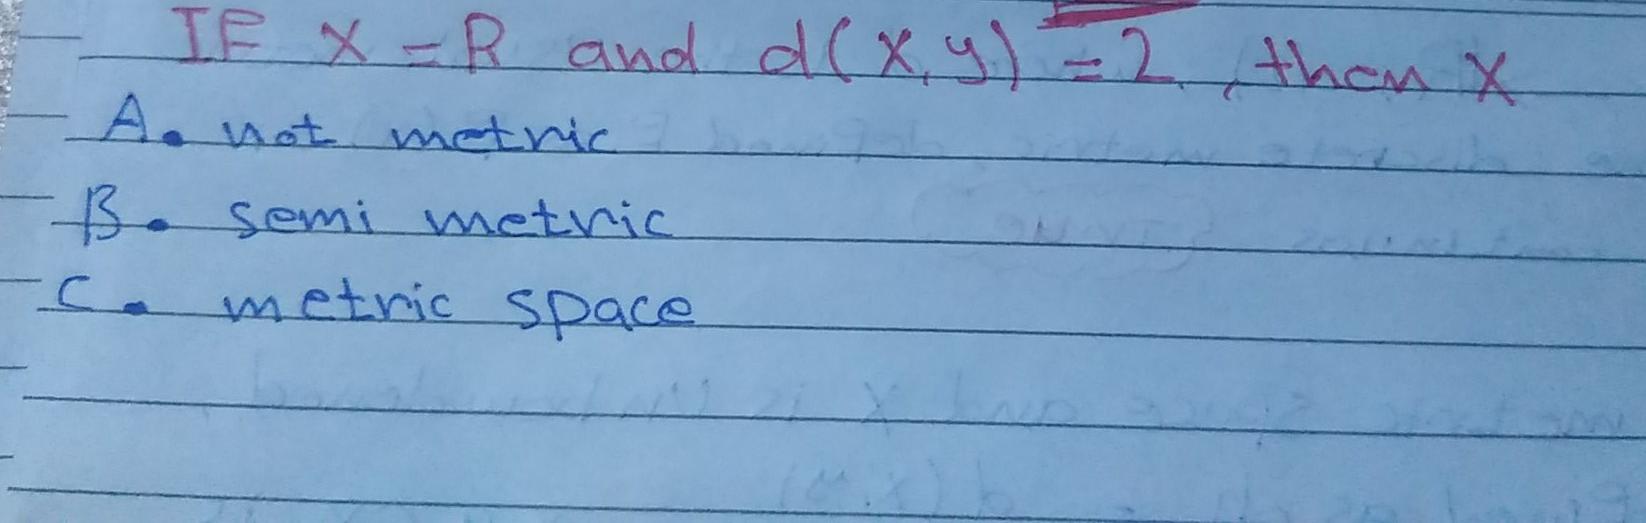 If X R And D X Y 2 Then X A Not Metric Bo Semi Metric Metric Space 1